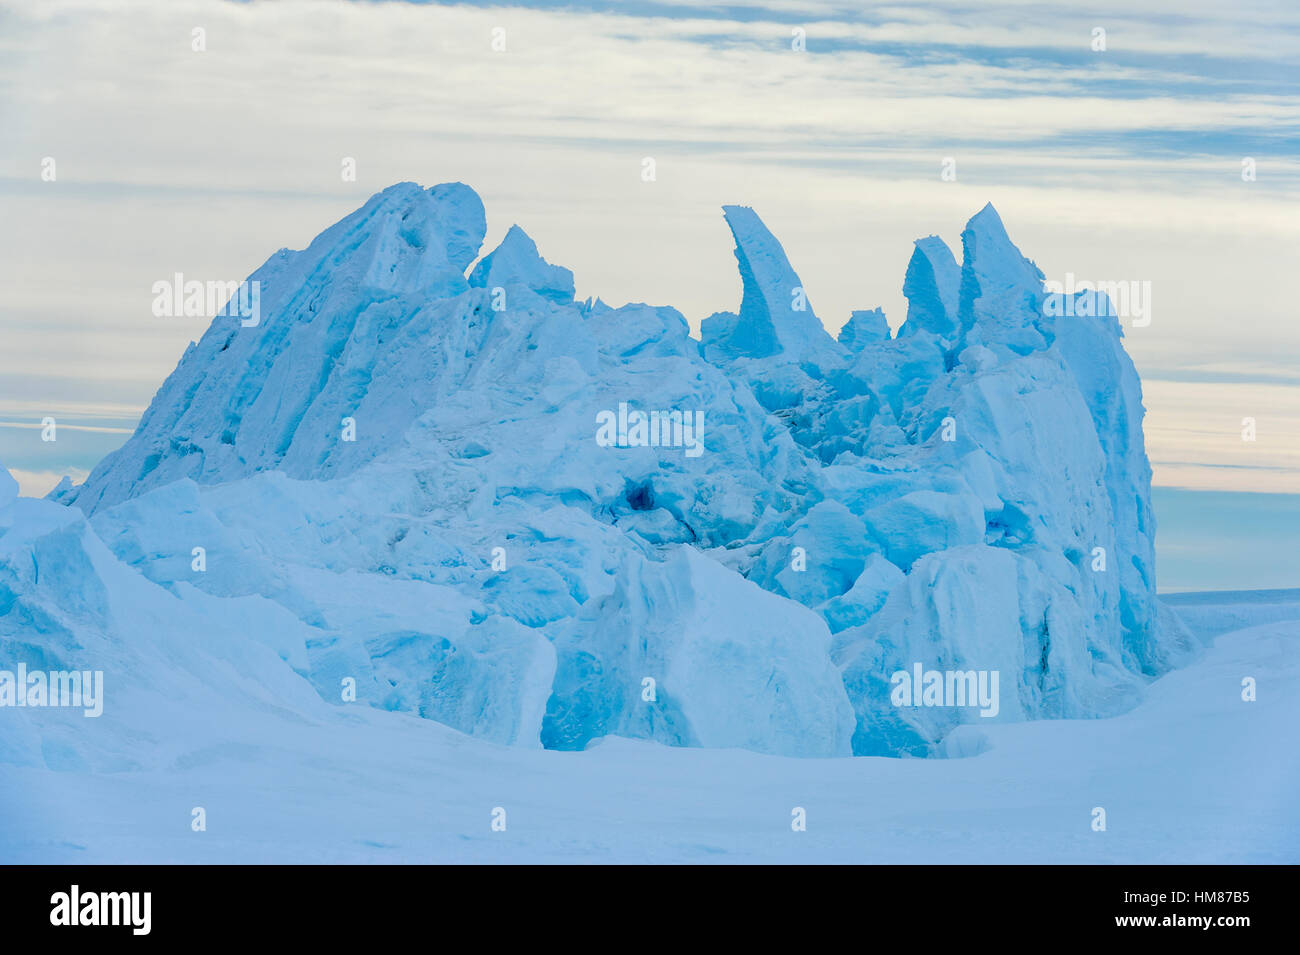 Blocs de glace fracturée skywards poussé le long des crêtes de pression dans la glace de mer. Banque D'Images